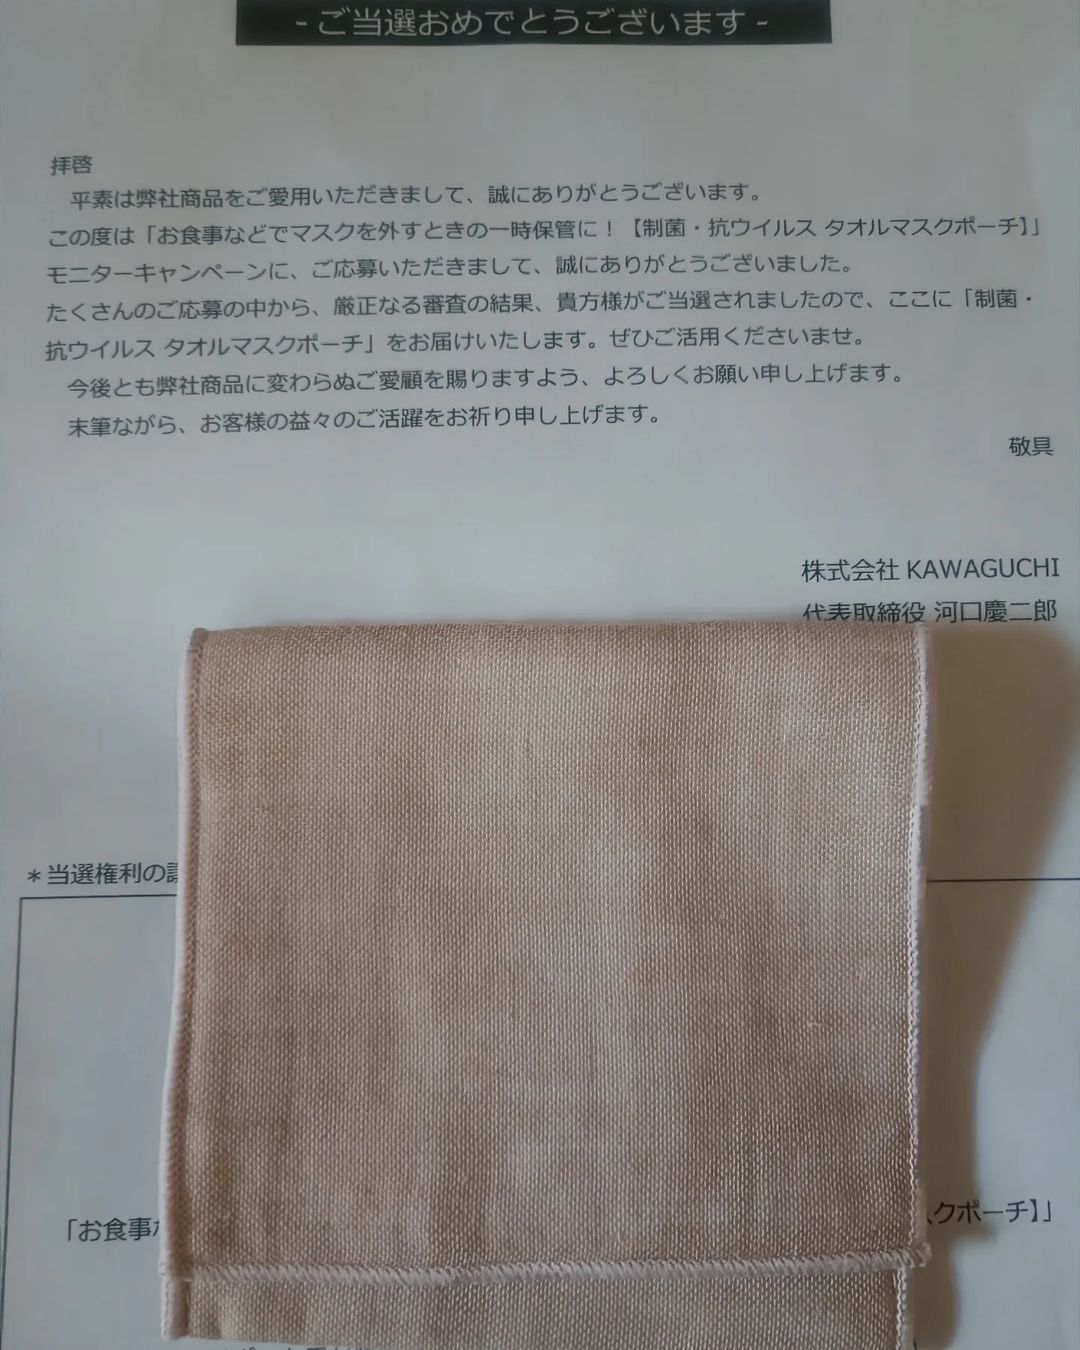 口コミ投稿：miemiemie7777株式会社KAWAGUCHI様、モニプラ様からマスクケースをいただきました。…